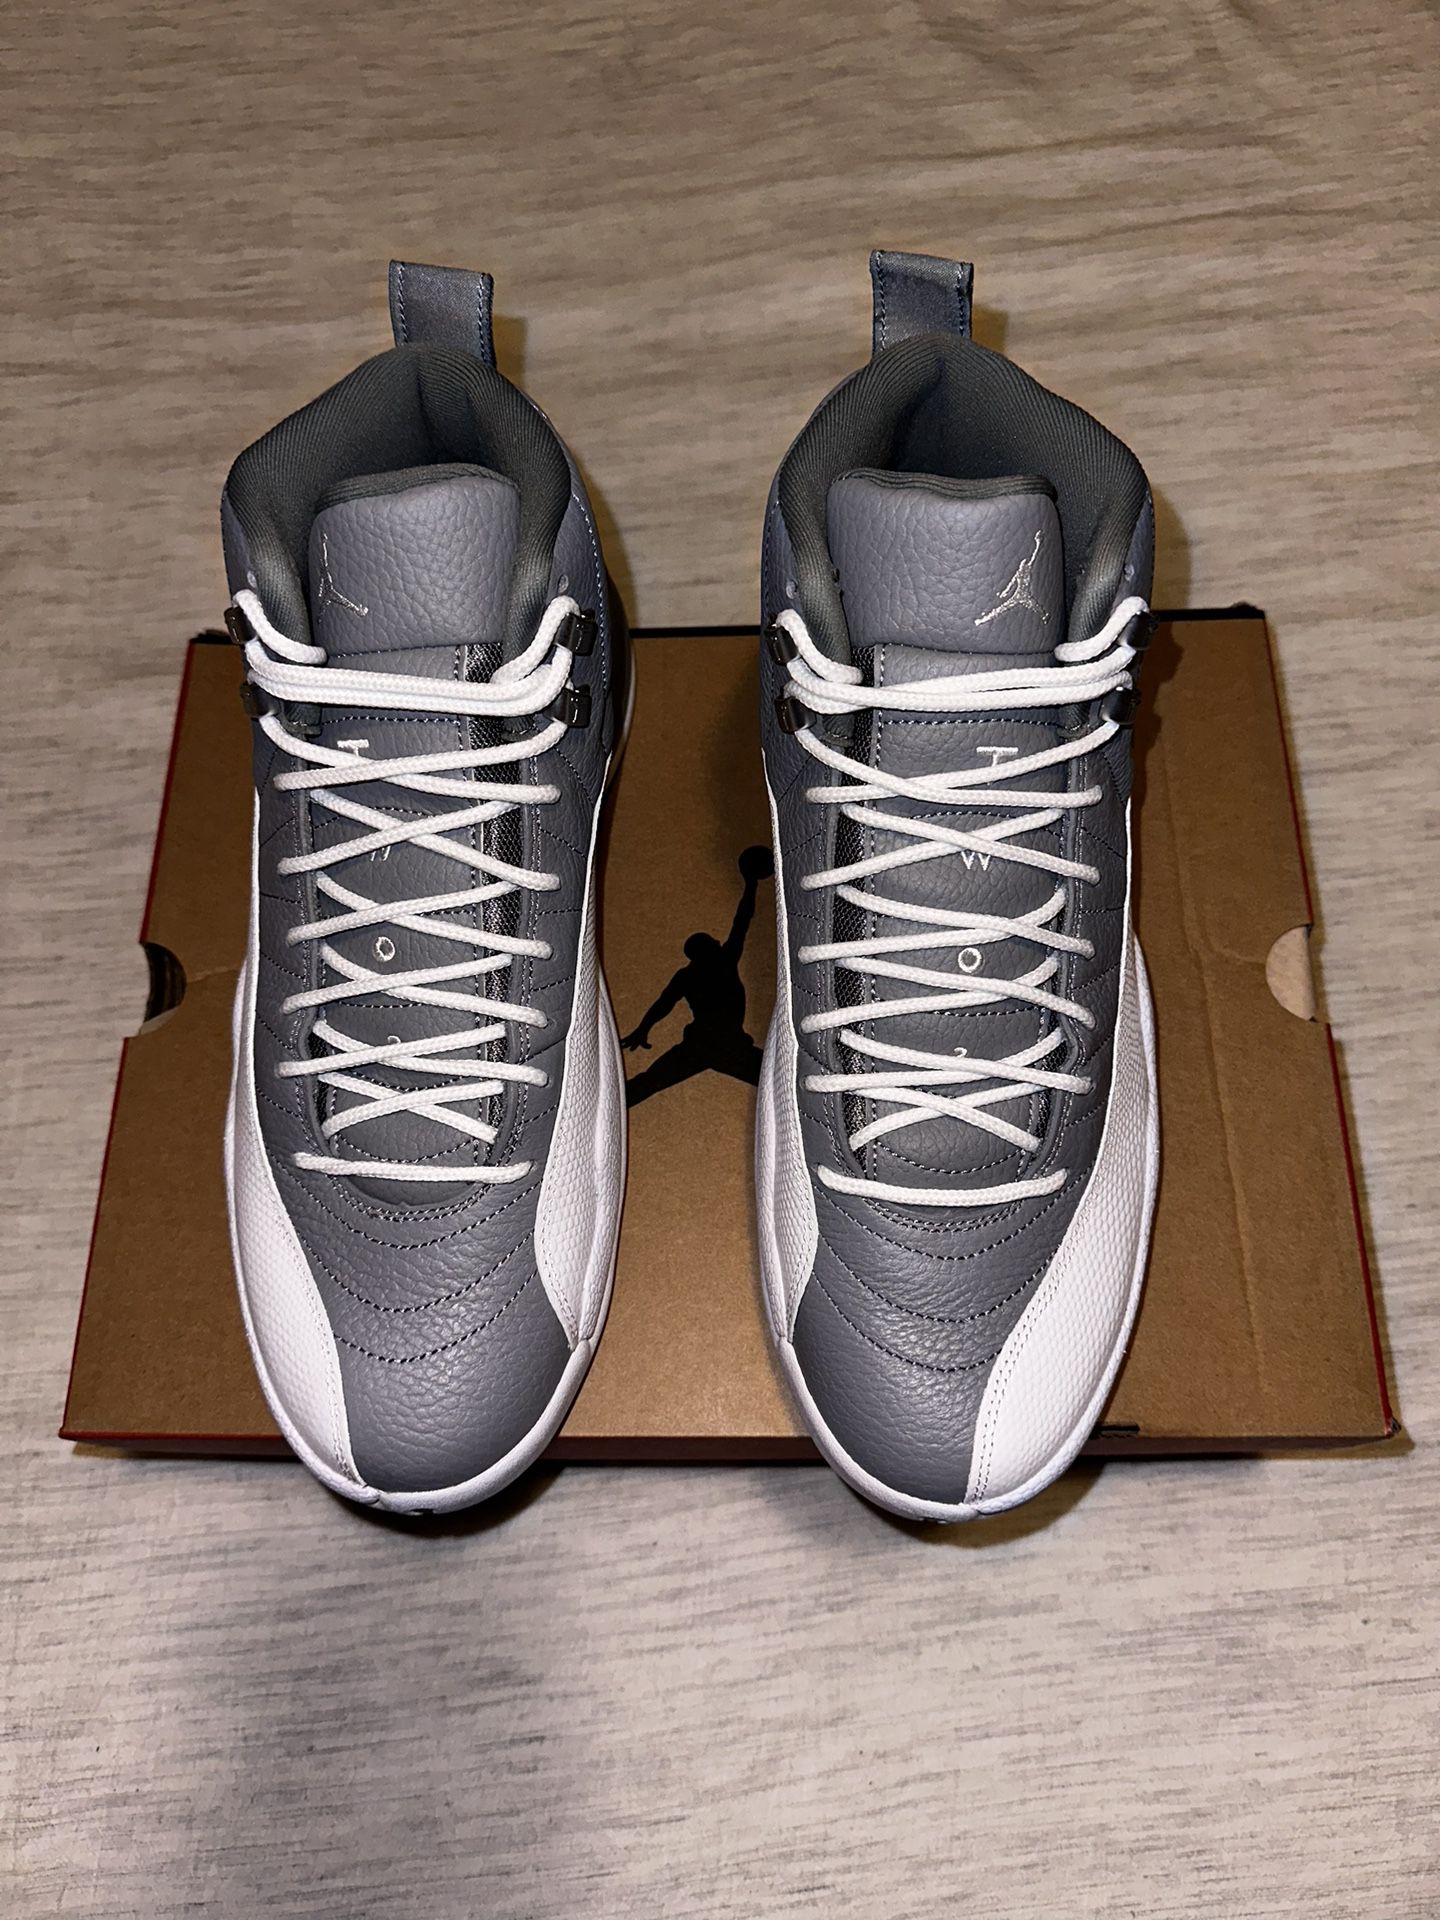 Men’s Jordan Air 12 Shoes Stealth Size 11